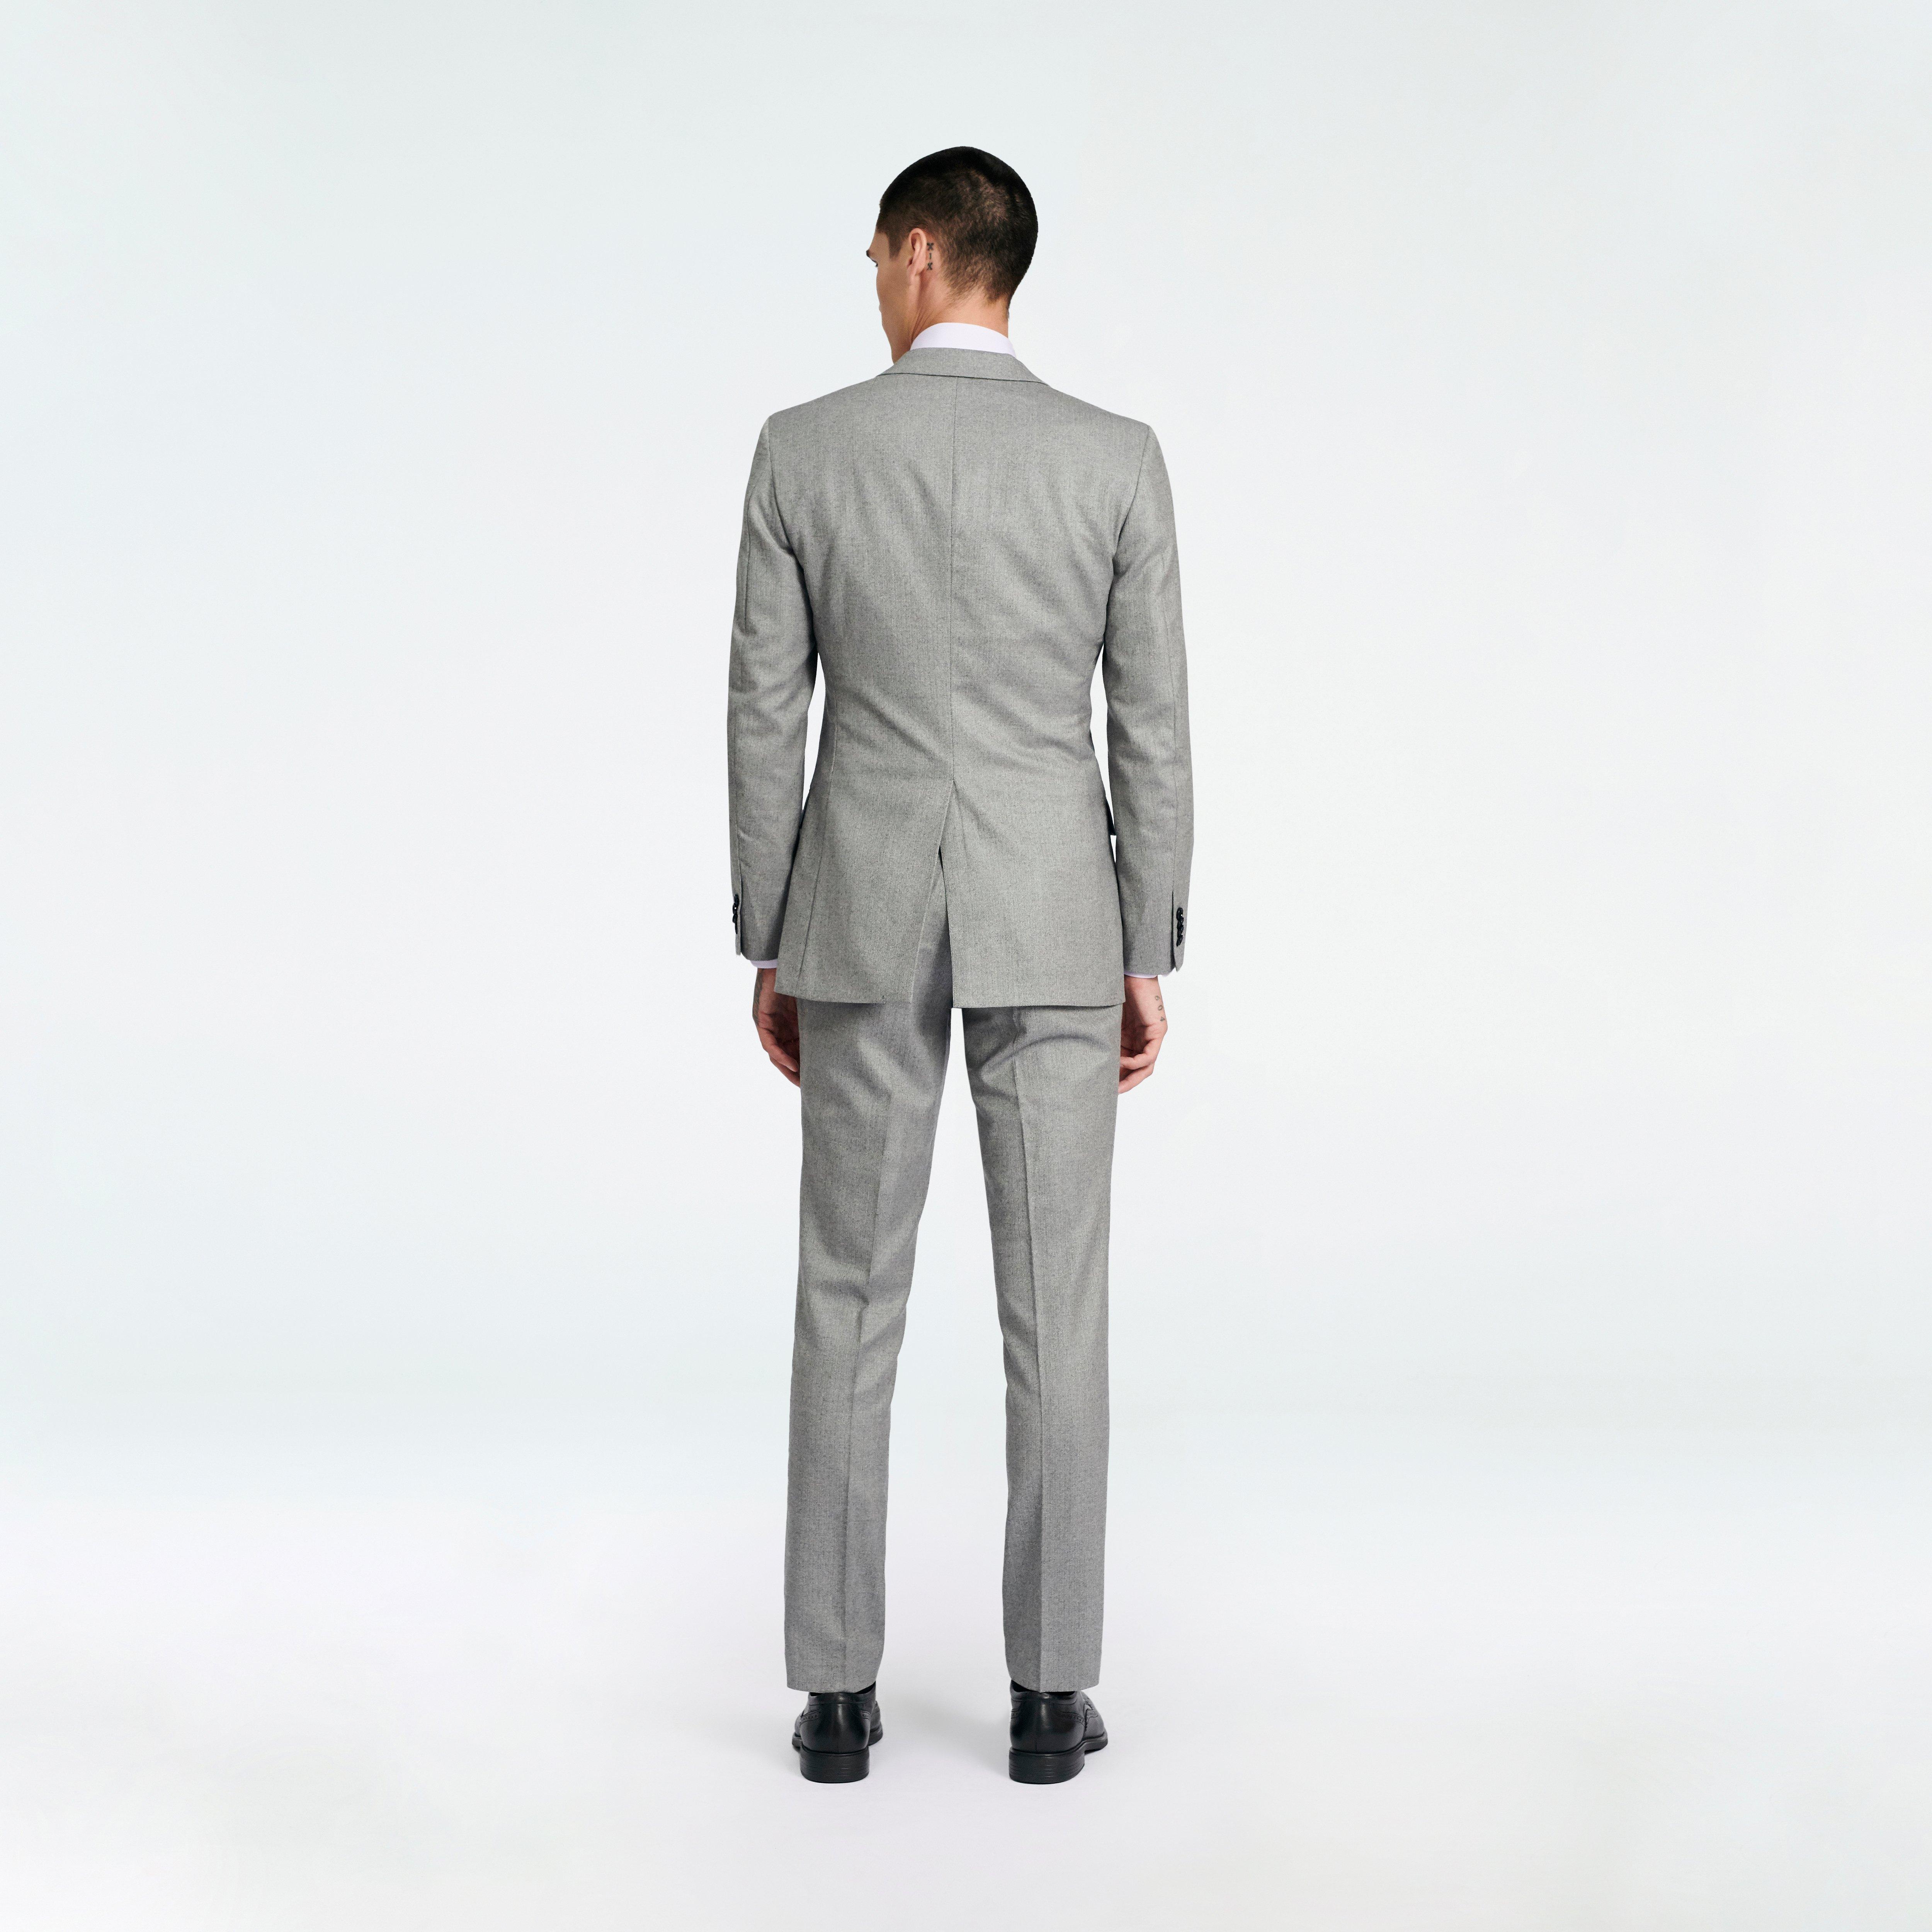 Prescot Herringbone Gray Suit